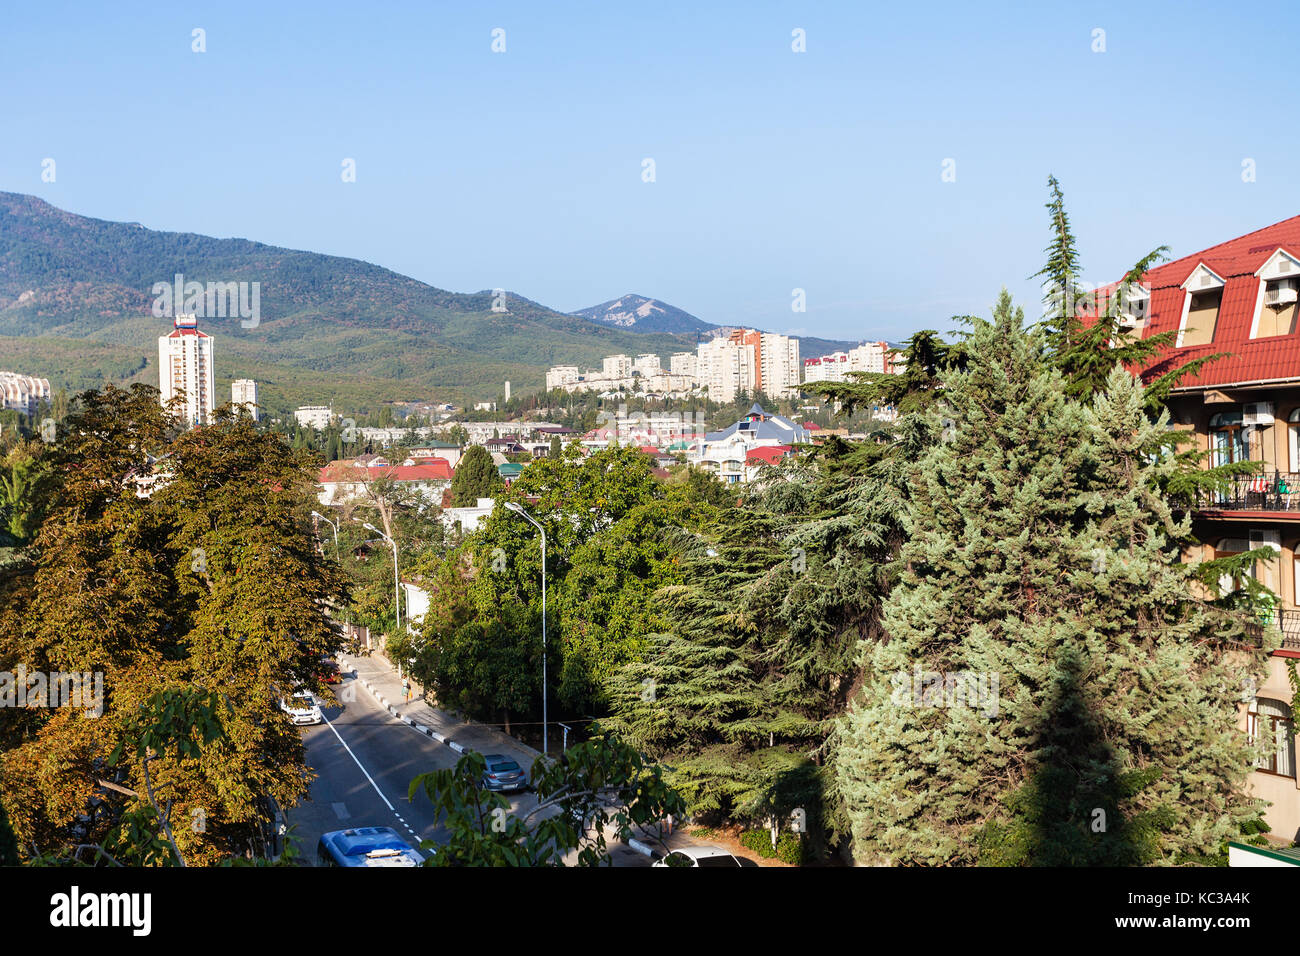 travel to Crimea - view of Baglikov Street in Alushta city in morning Stock Photo